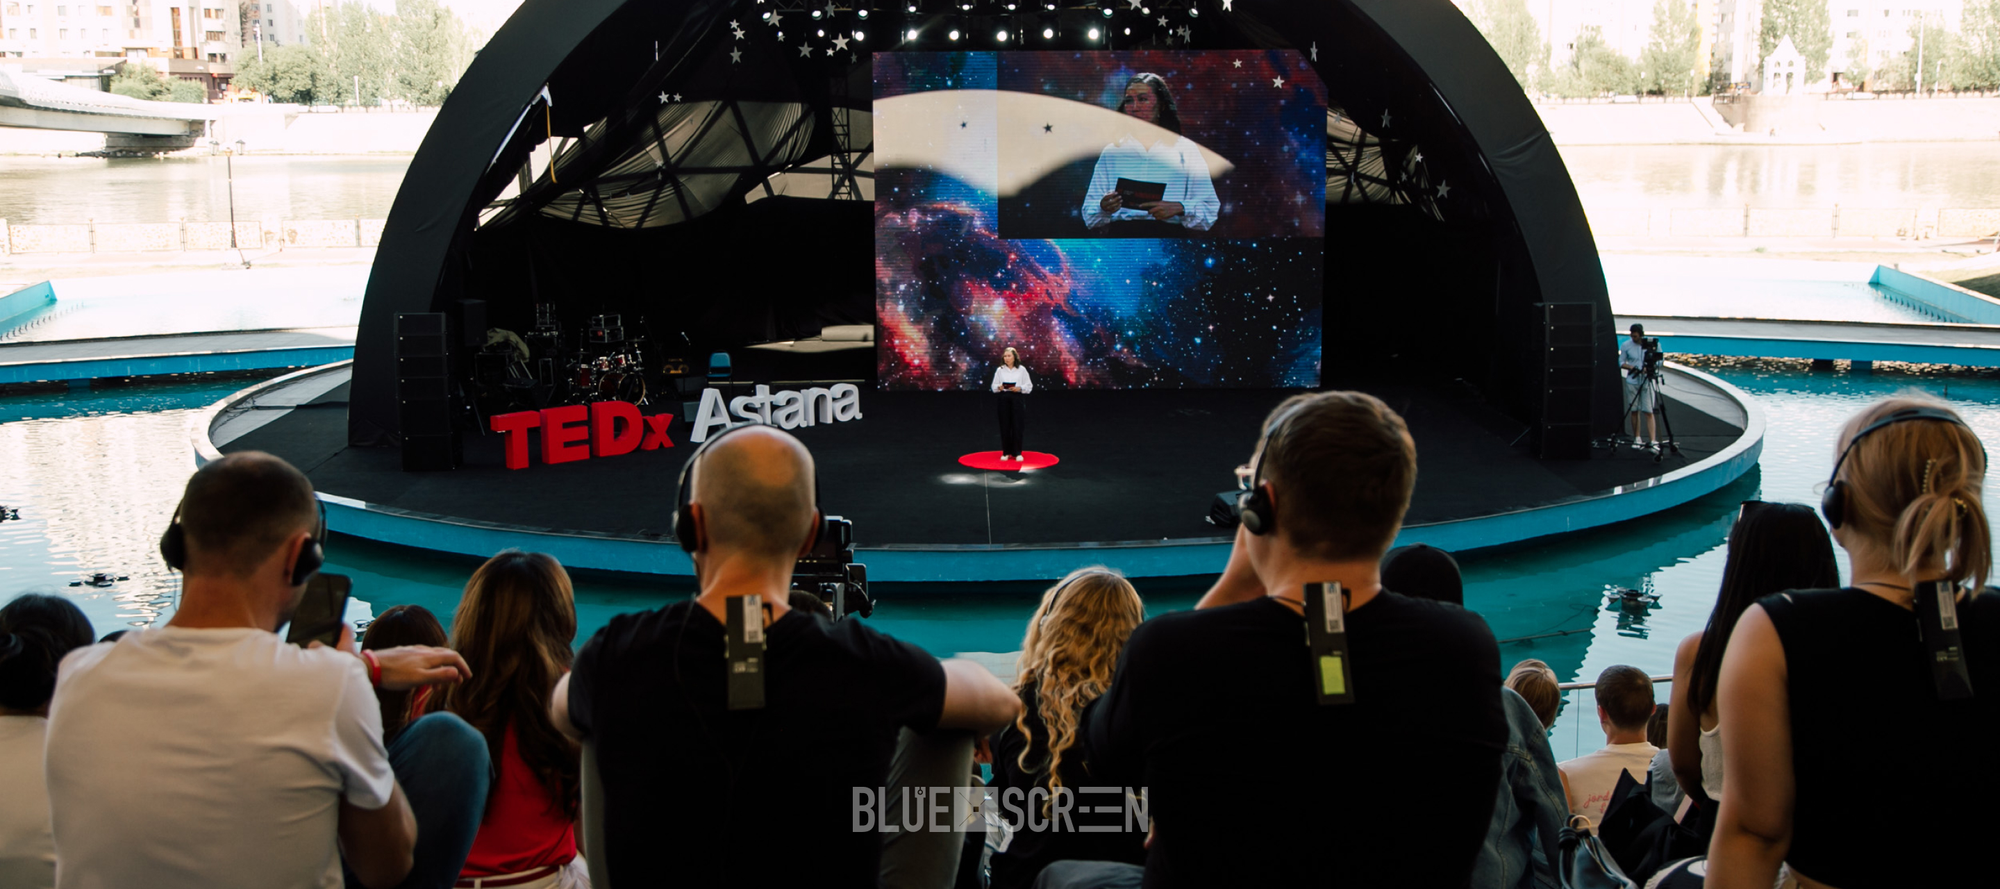 Что обсудили на TEDxAstana 2023? Главные темы.